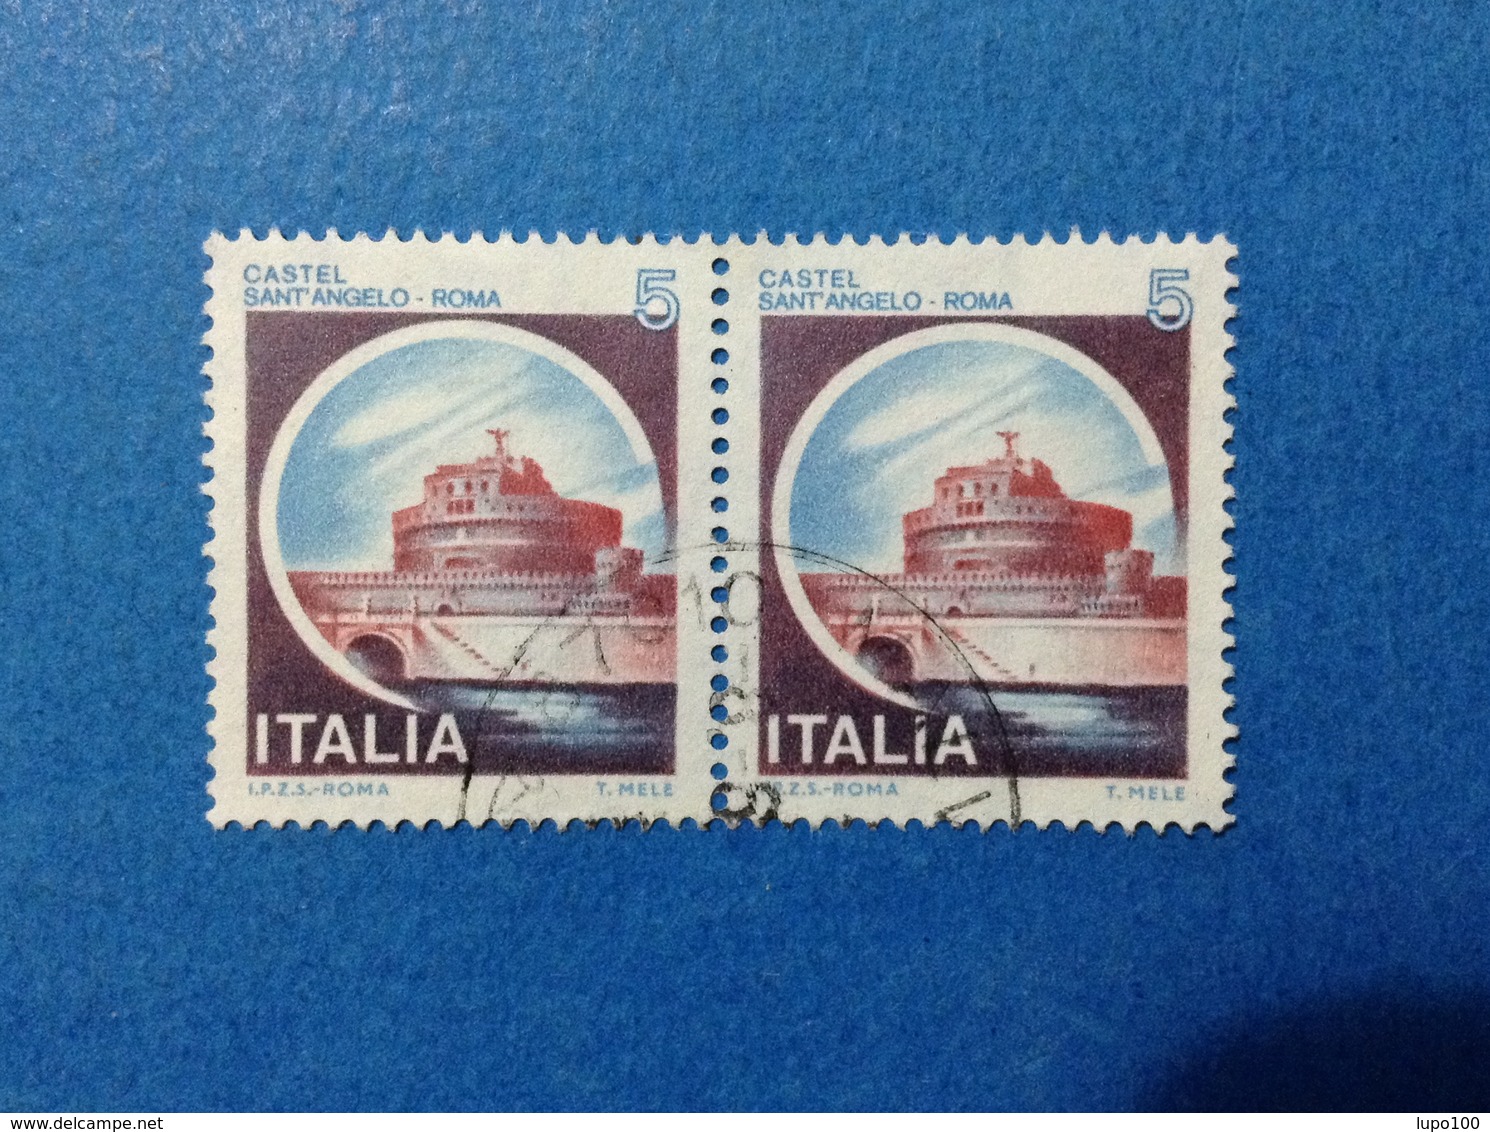 1980 ITALIA FRANCOBOLLI COPPIA CASTELLI USATI STAMPS USED - 5 LIRE CASTELLO SANT'ANGELO ROMA - 1971-80: Usati